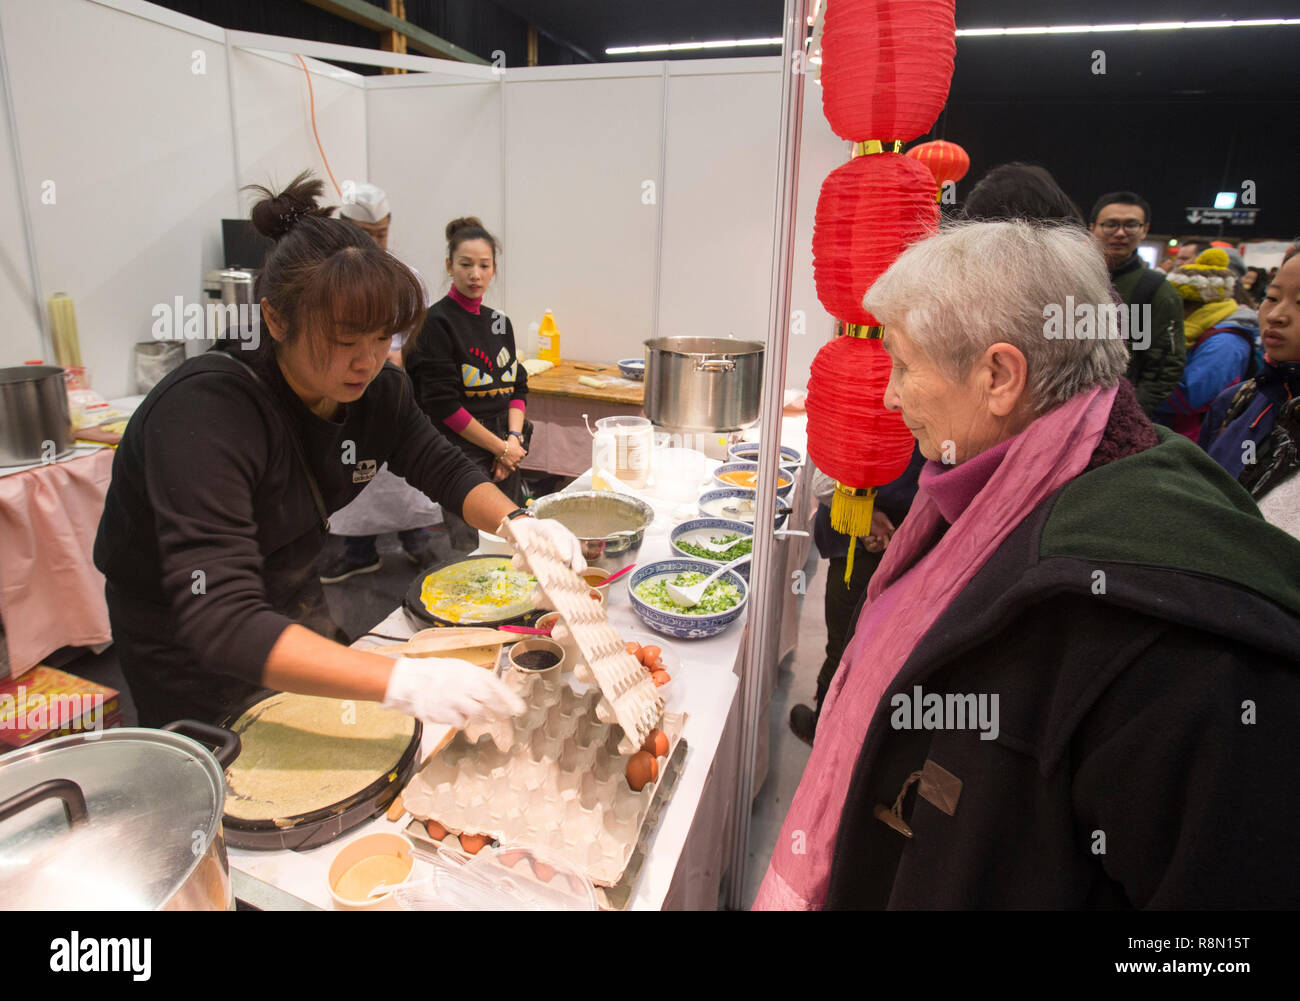 (181216) -- Berna, Diciembre 16, 2018 (Xinhua) -- Una mujer local espera para degustar crepe chino durante el Festival de la cultura de la comida china en Berna, capital de Suiza, el 16 de diciembre, 2018. El primer Festival de la cultura de la comida china se celebró el domingo en el interior del Bernexpo aquí en la capital suiza, atrayendo a más de 1.000 residentes locales en la fiesta de Navidad. Los visitantes disfrutaron de bocadillos chinos así como espectáculos tradicionales incluyendo la caligrafía, canciones folclóricas y artes marciales, durante el día de festival, apoyado por la Embajada de China y patrocinado por diversas asociaciones locales. (Xinhua/Xu Jinq Foto de stock